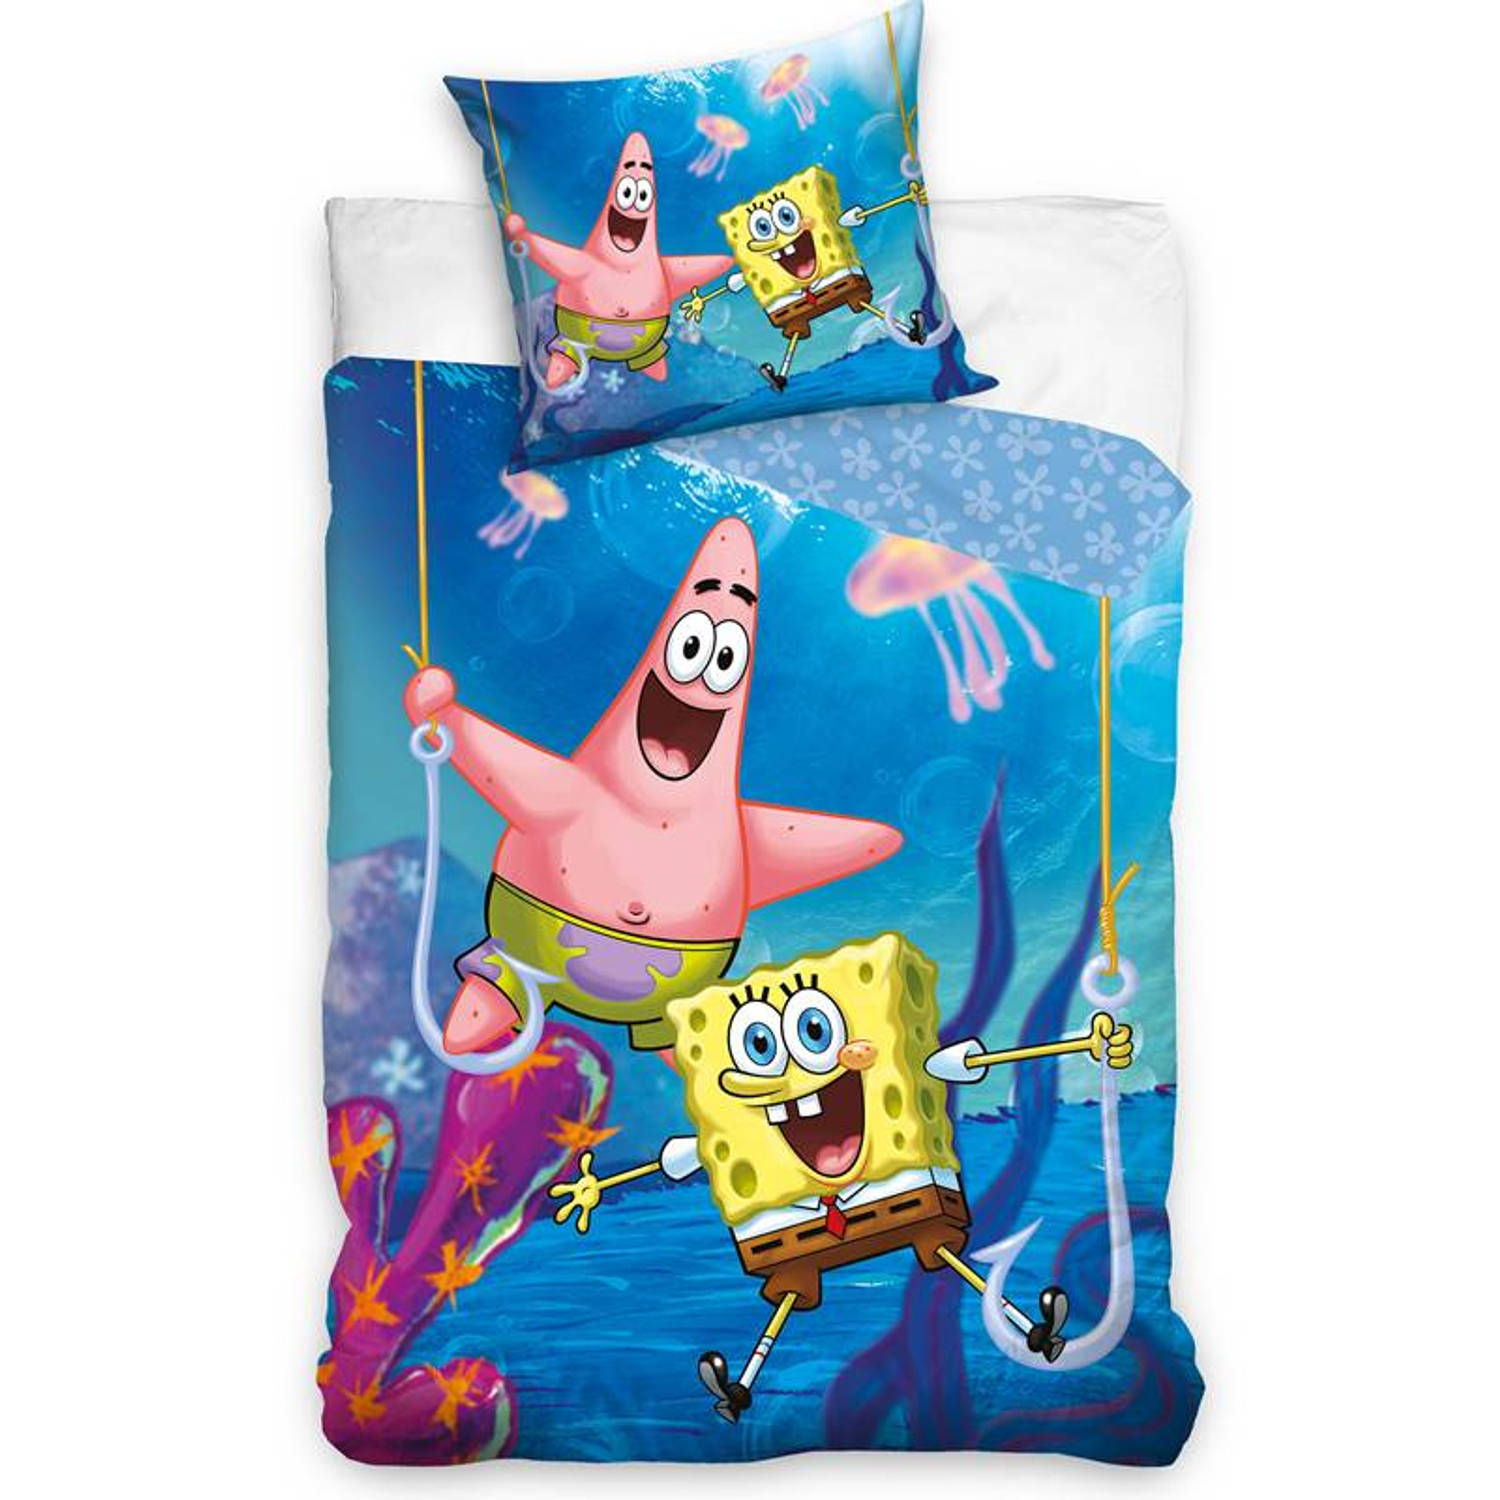 Spongebob Squarepants Spongebob Dekbedovertrek - Eenpersoons - 140x200 cm - Blauw